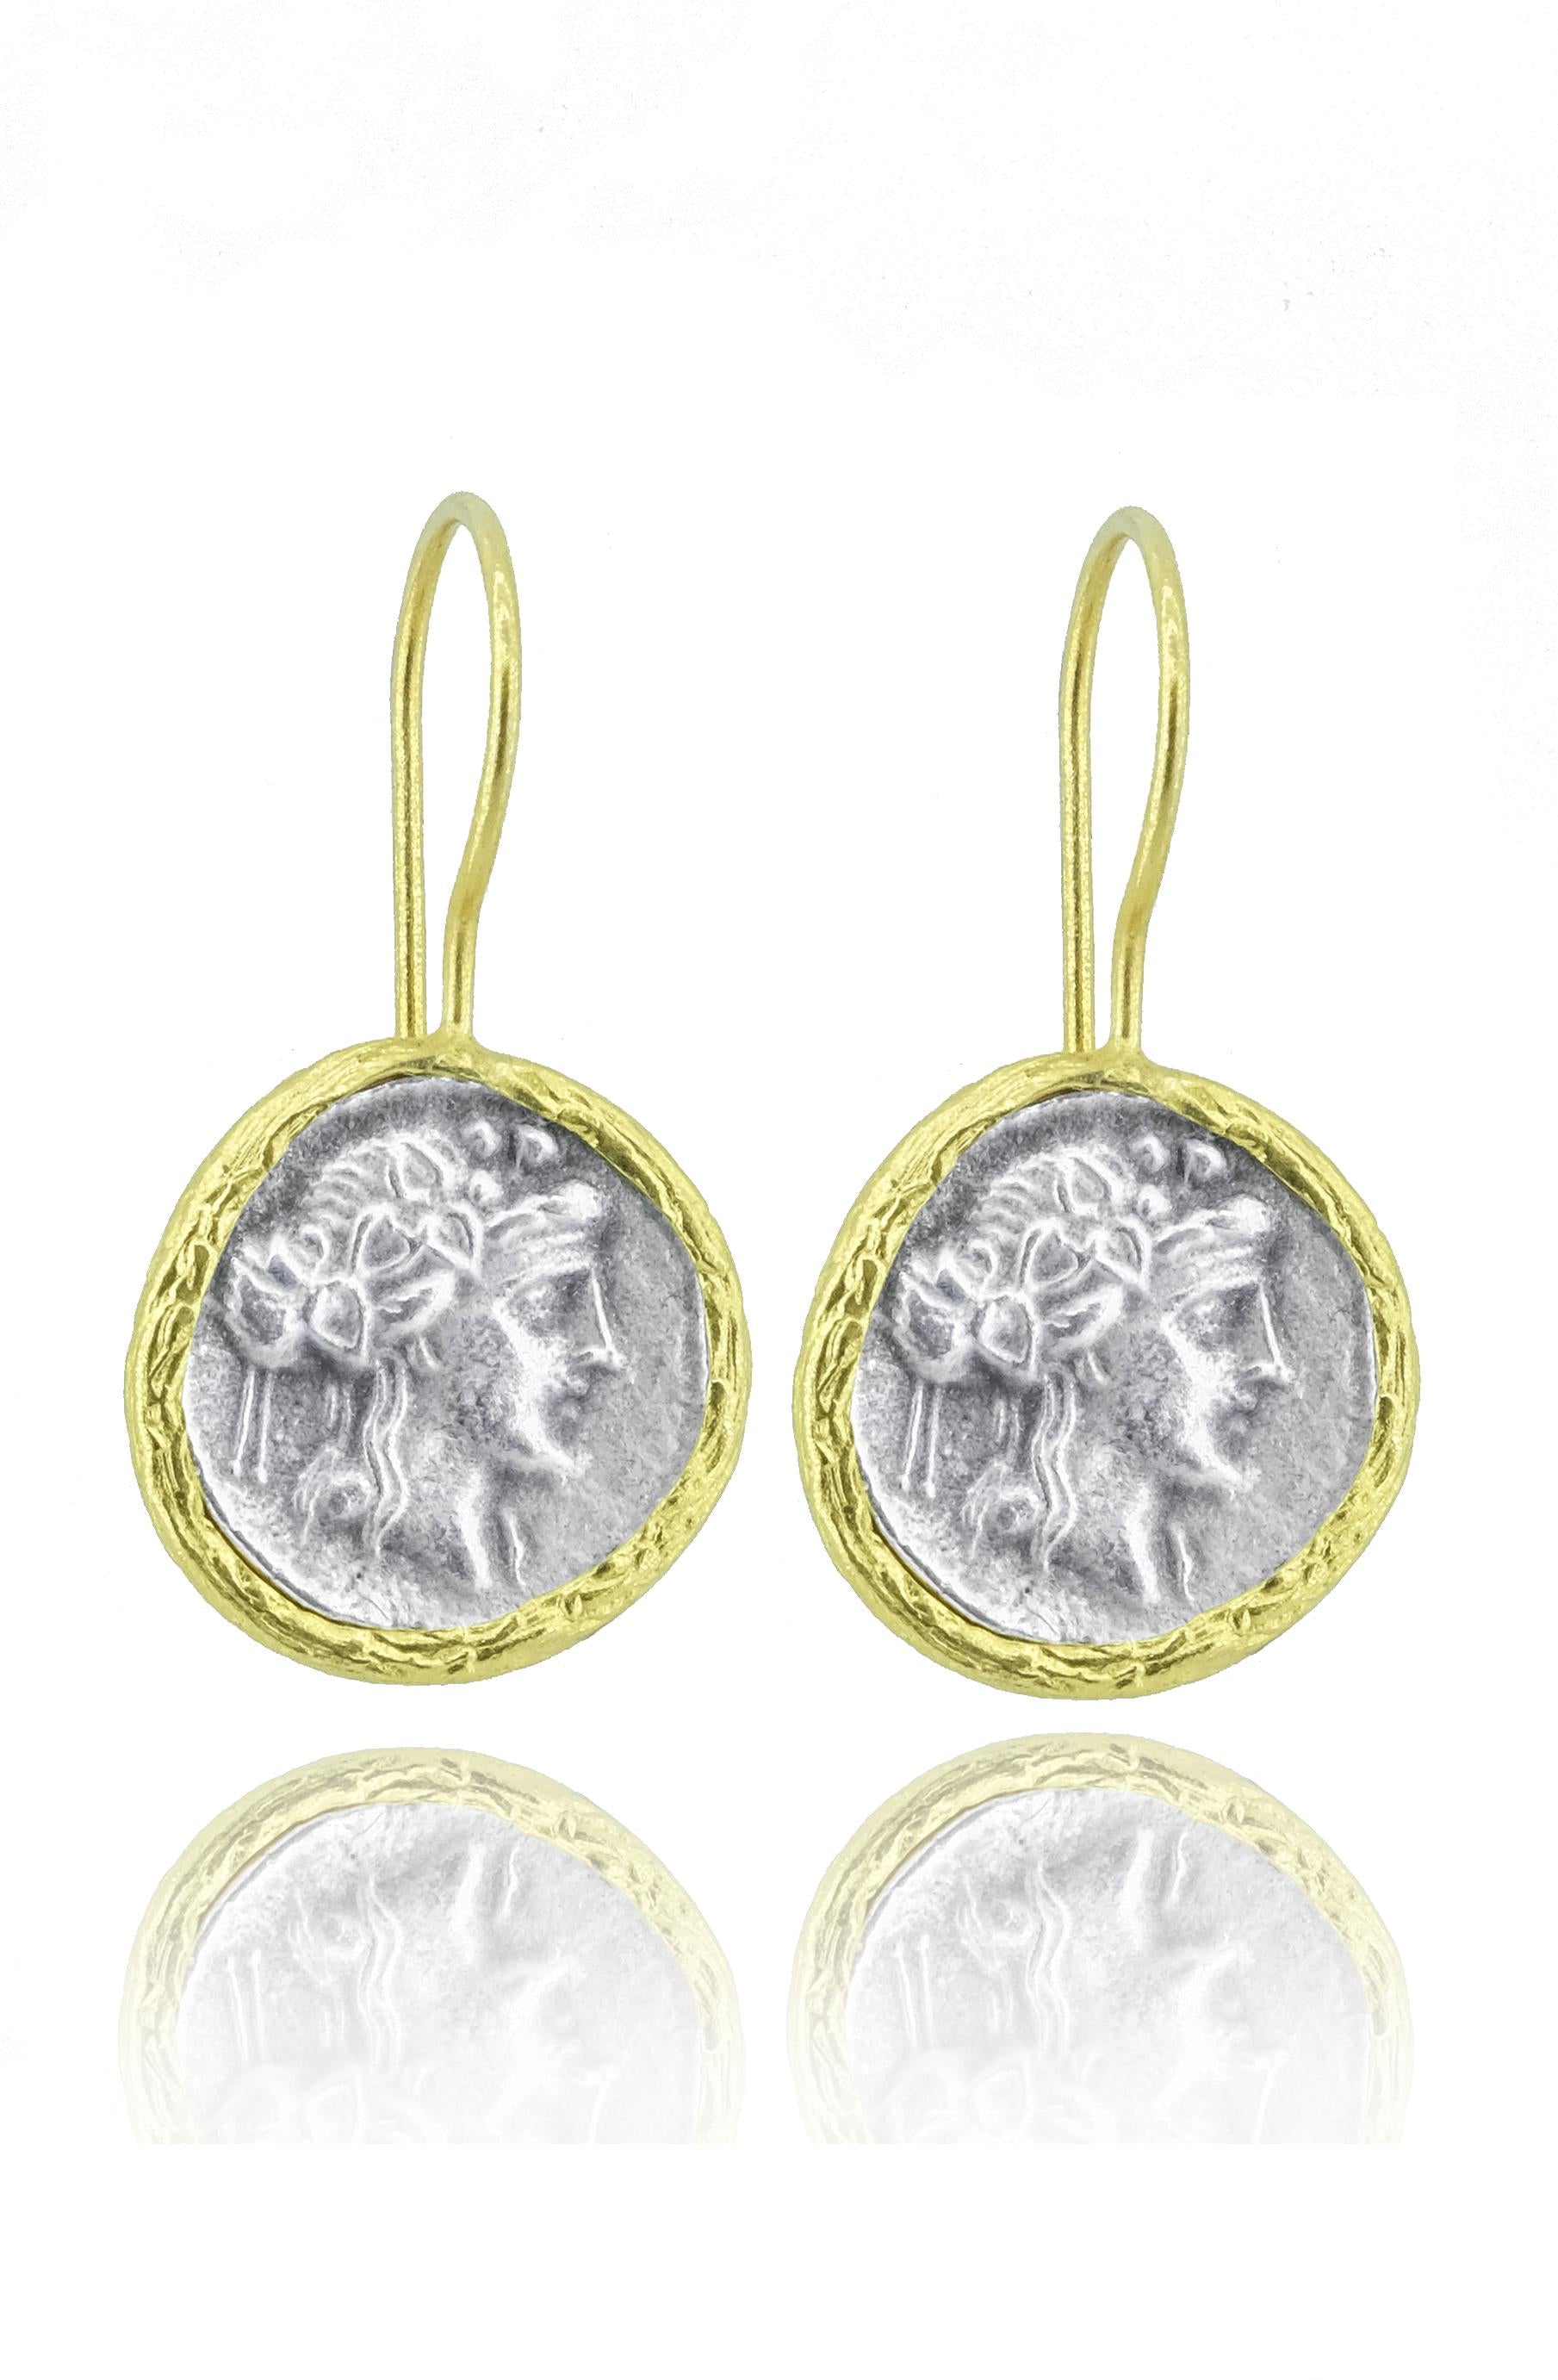 Antique Series Women Motif Authentic Silver Women's Earrings